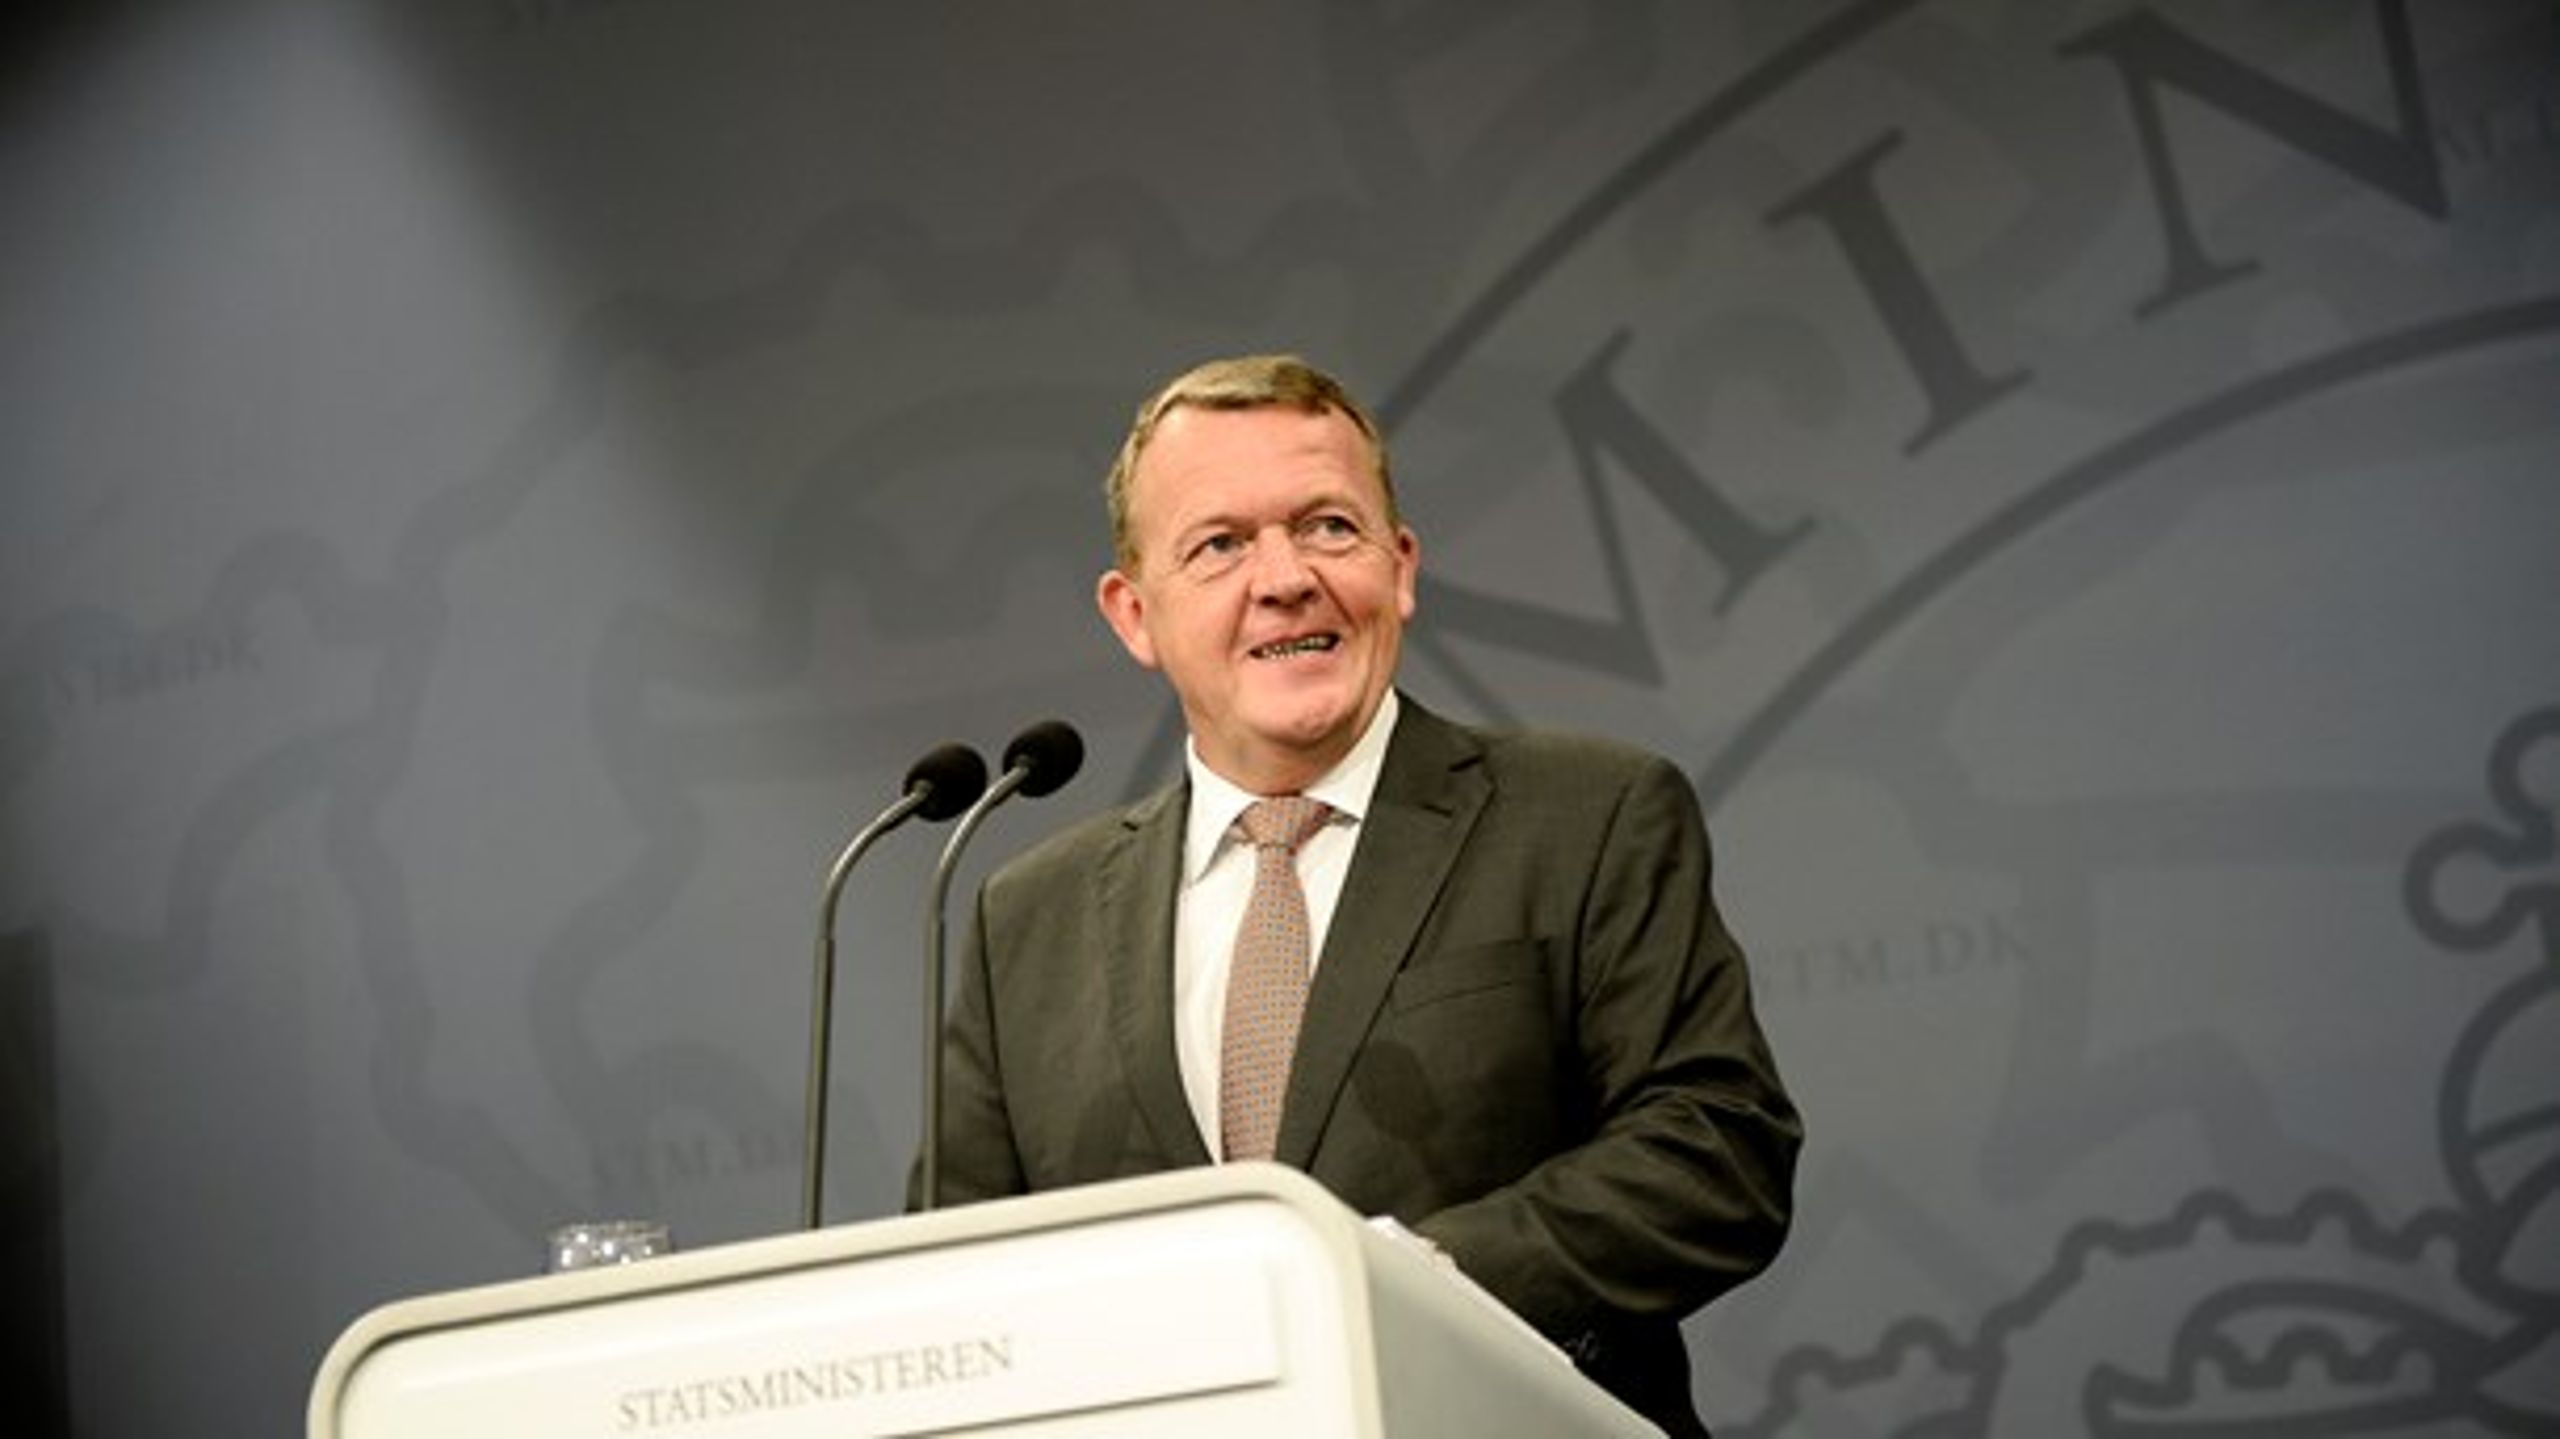 Statsminister Lars Løkke Rasmussen (V) har i dag fremlagt regeringens 
bud på en langsigtet plan for dansk økonomi, Helhedsplan 2025, hvor 
regeringen lægger op til en omlægning af SU'en.<br><br>